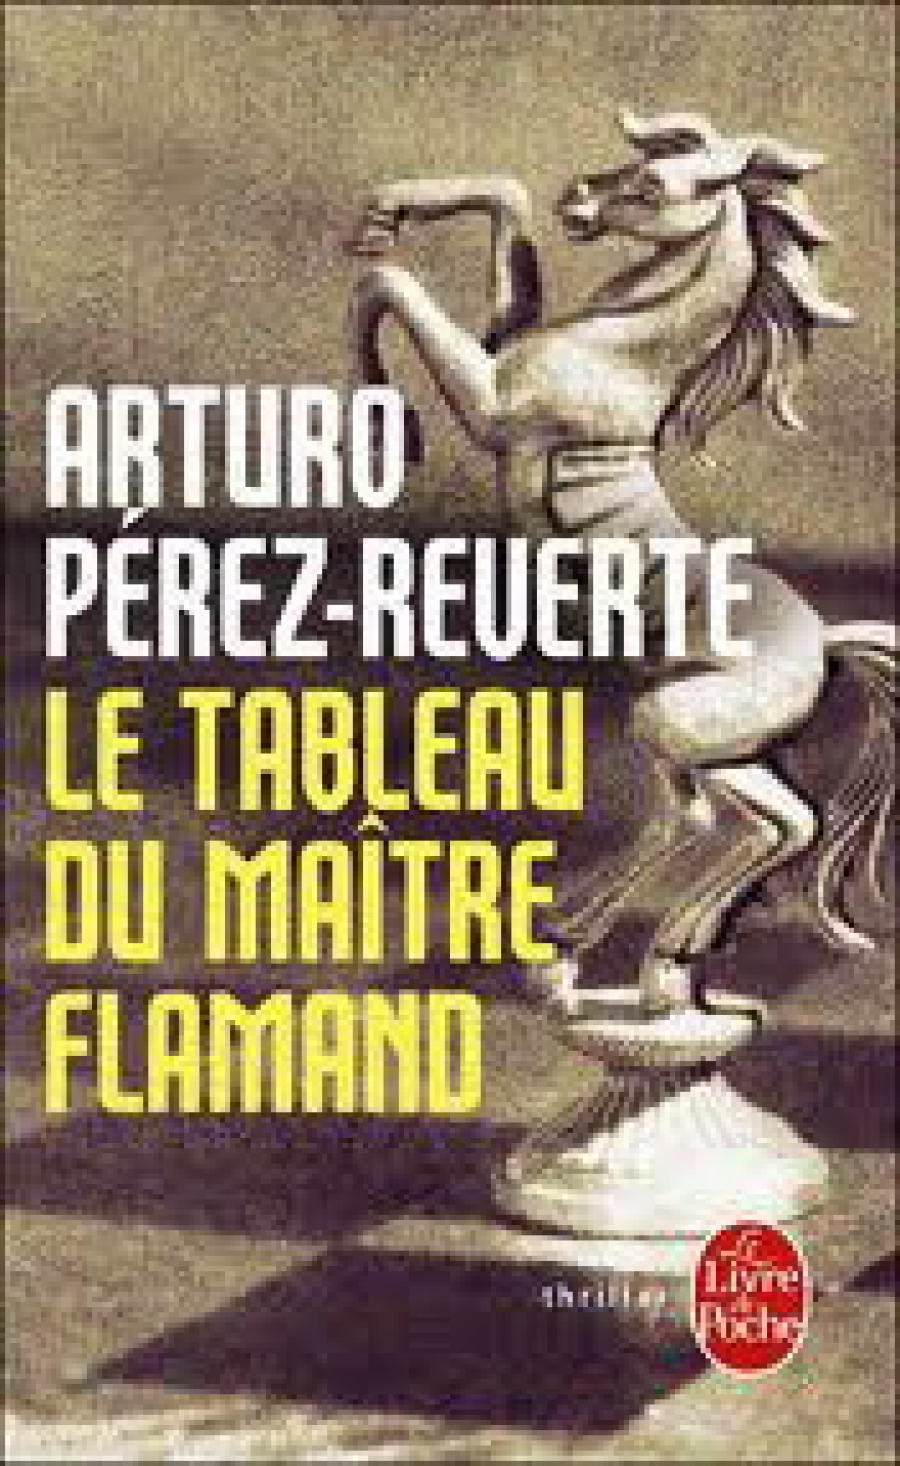 Arturo Perez-Reverte Le tableau du Maitre flamand 